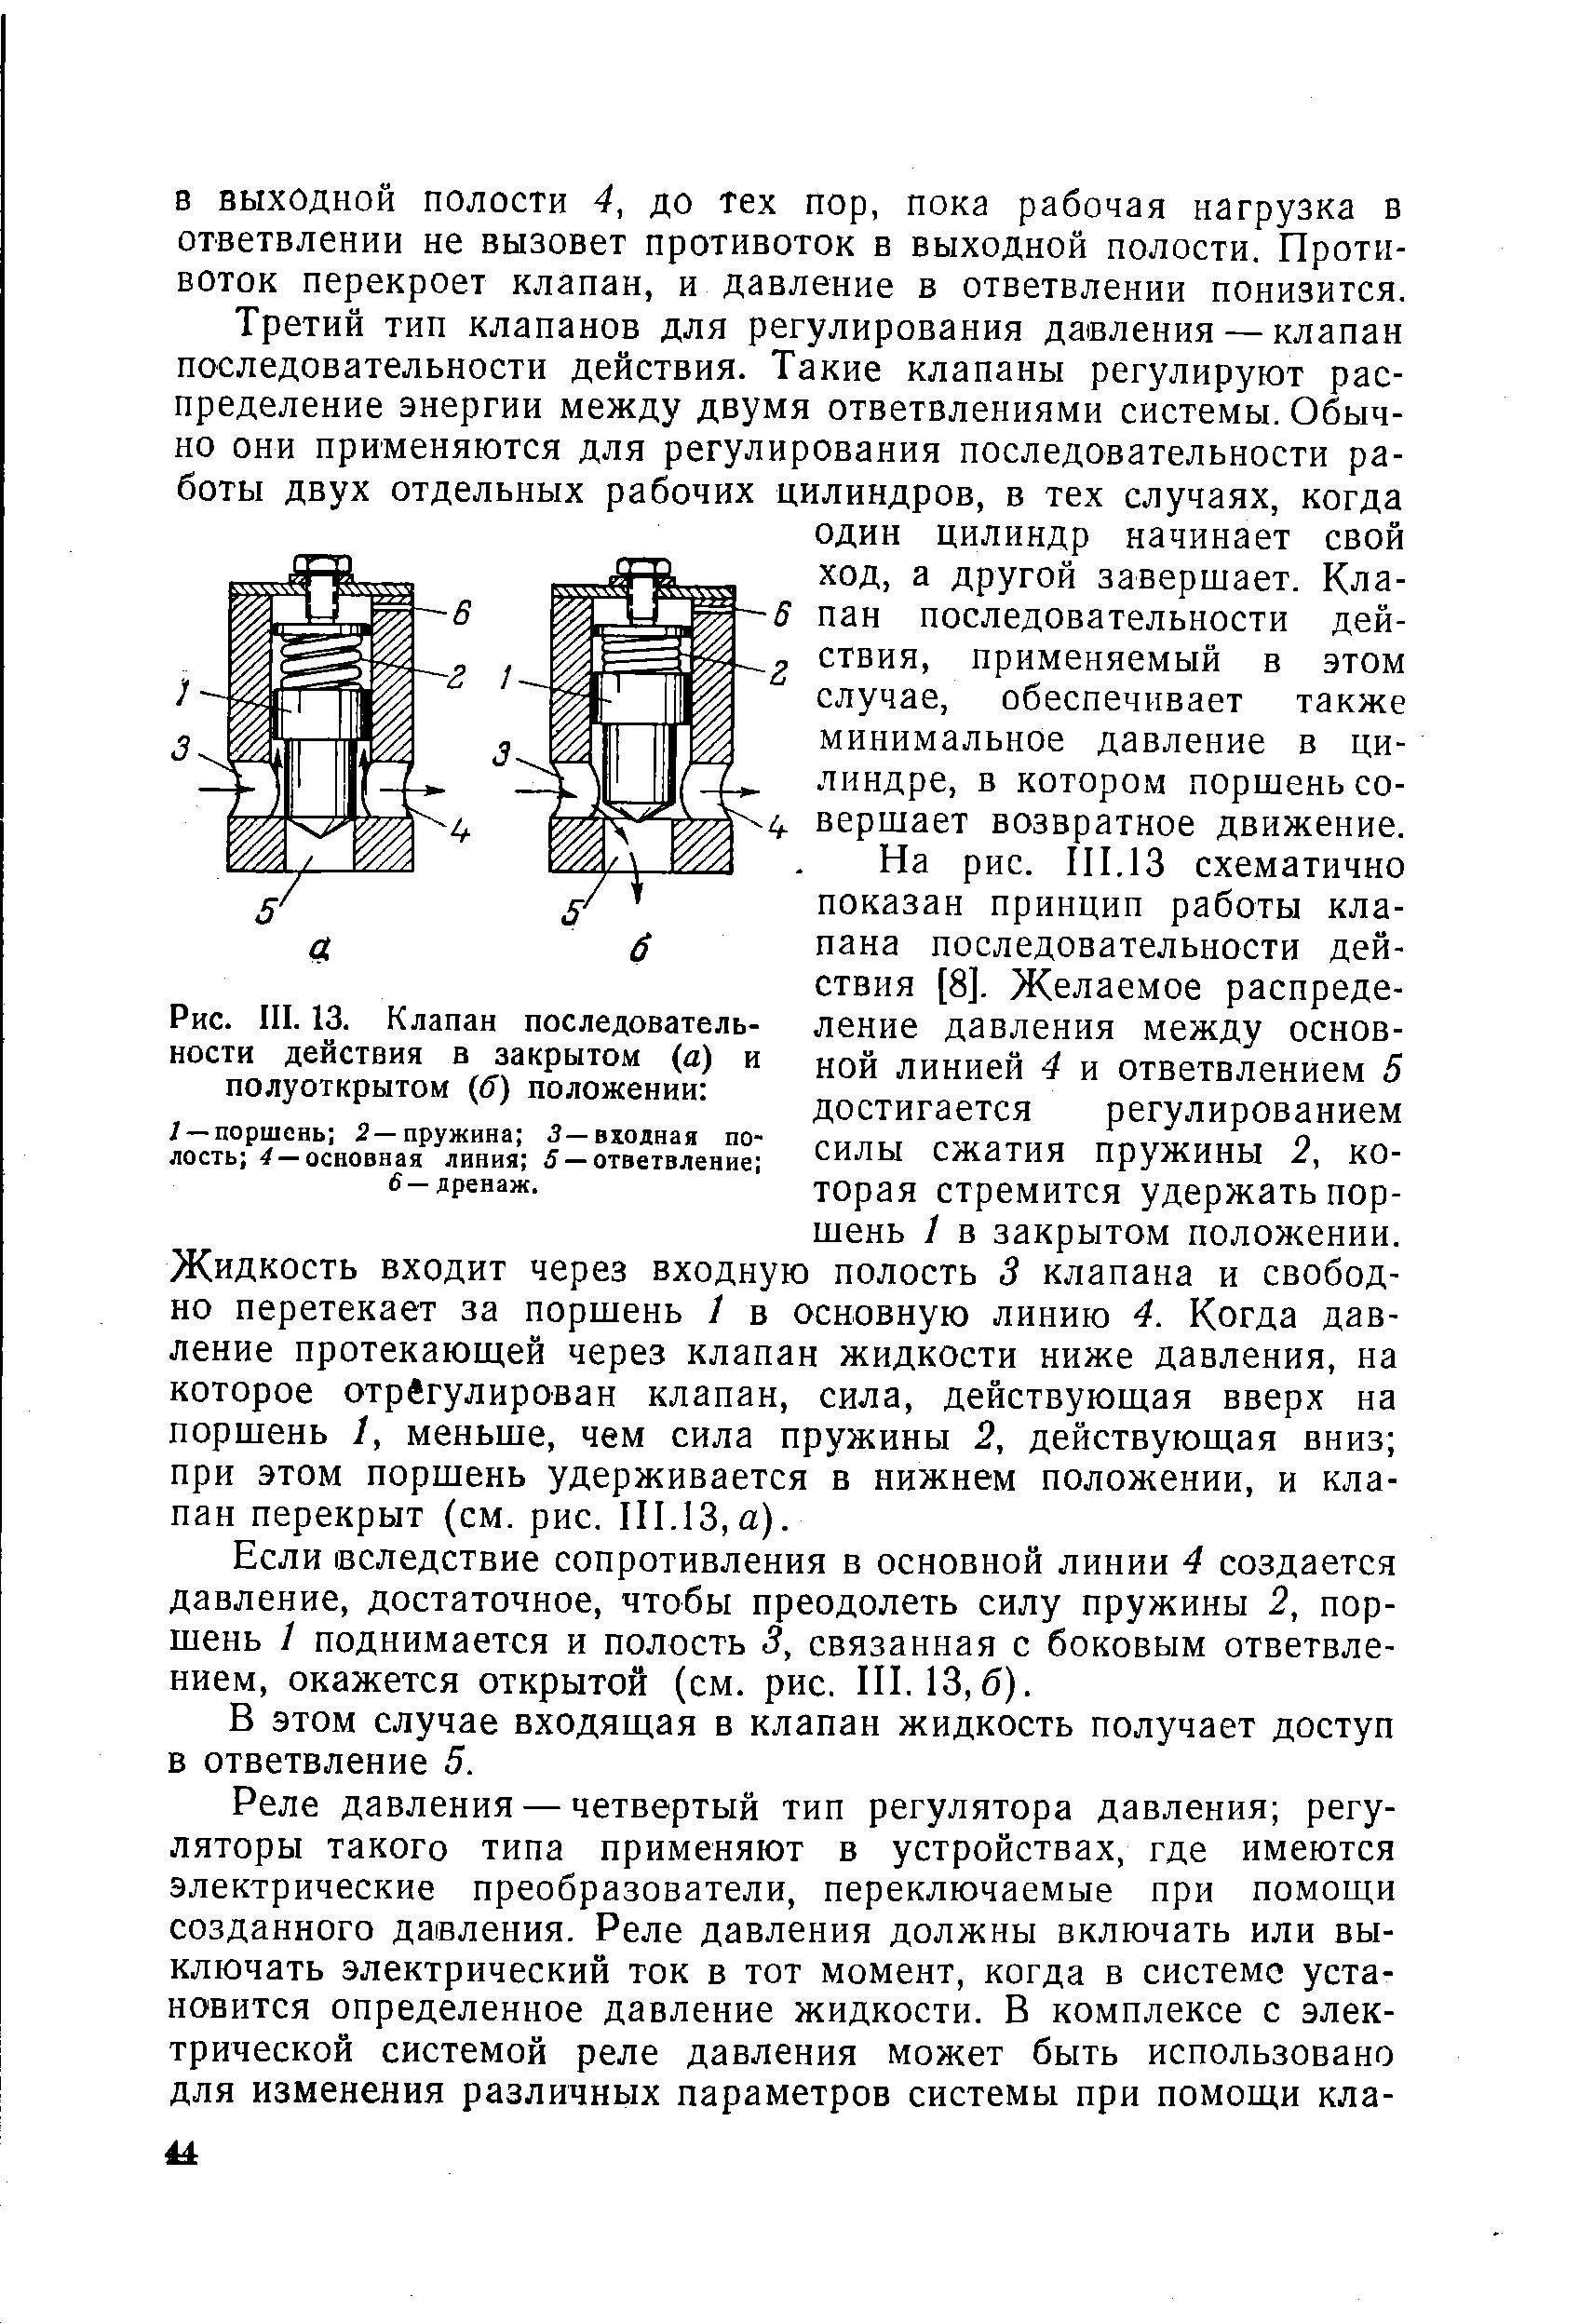 Рис. III. 13. Клапан последовательности действия в закрытом (а) и полуоткрытом (б) положении 
